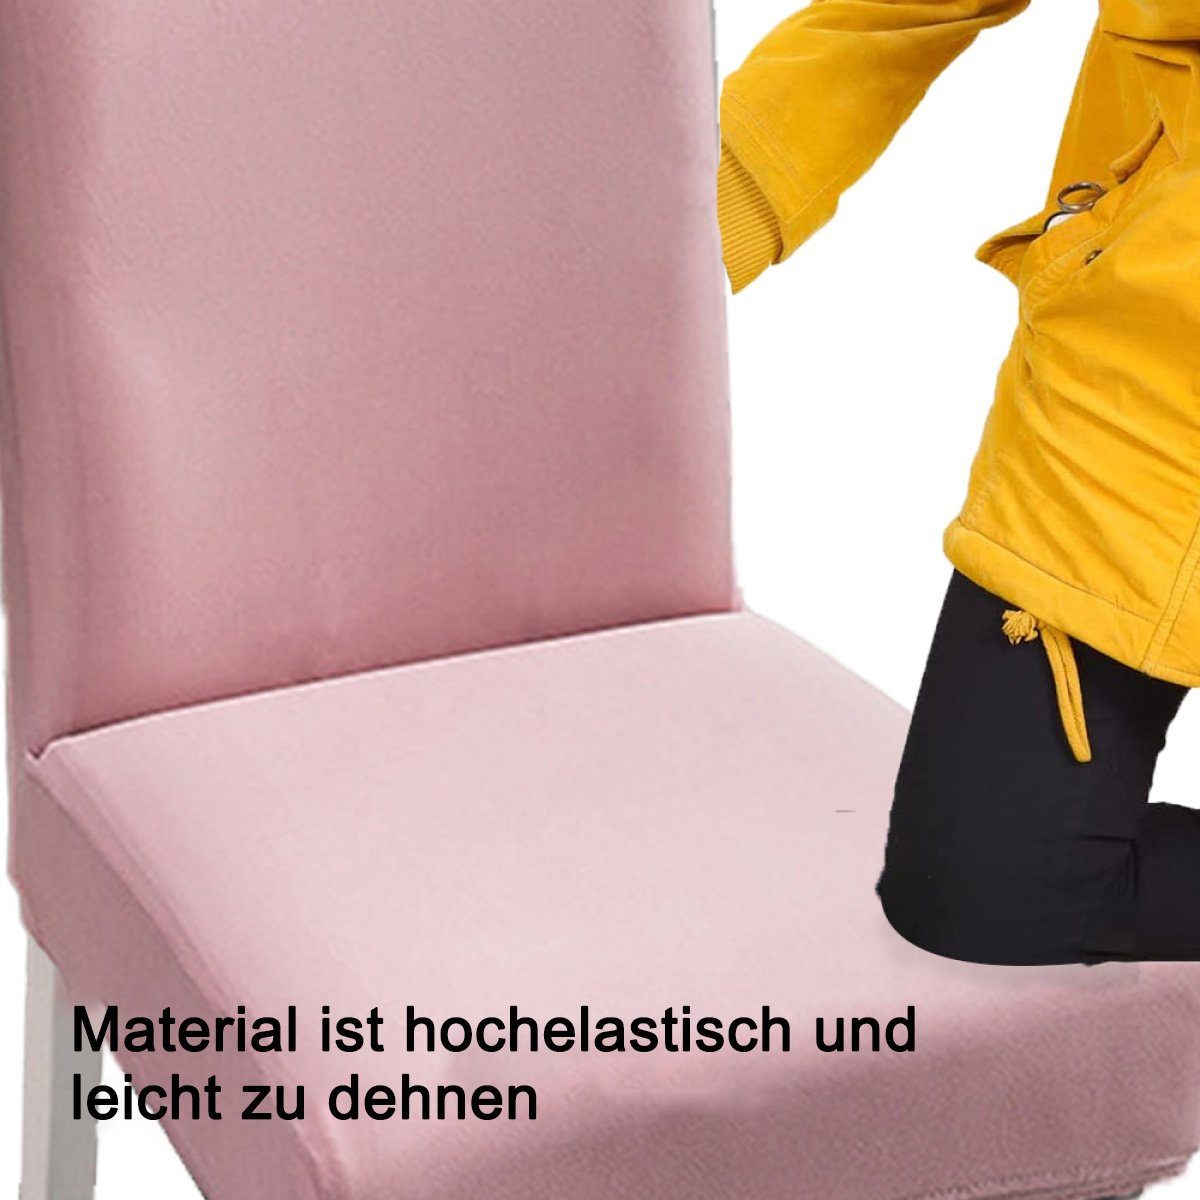 Stretch-Stuhlhussen abnehmbare Rosa Stuhlschutzbezüge, Esszimmer, Stuhlhusse für Juoungle das